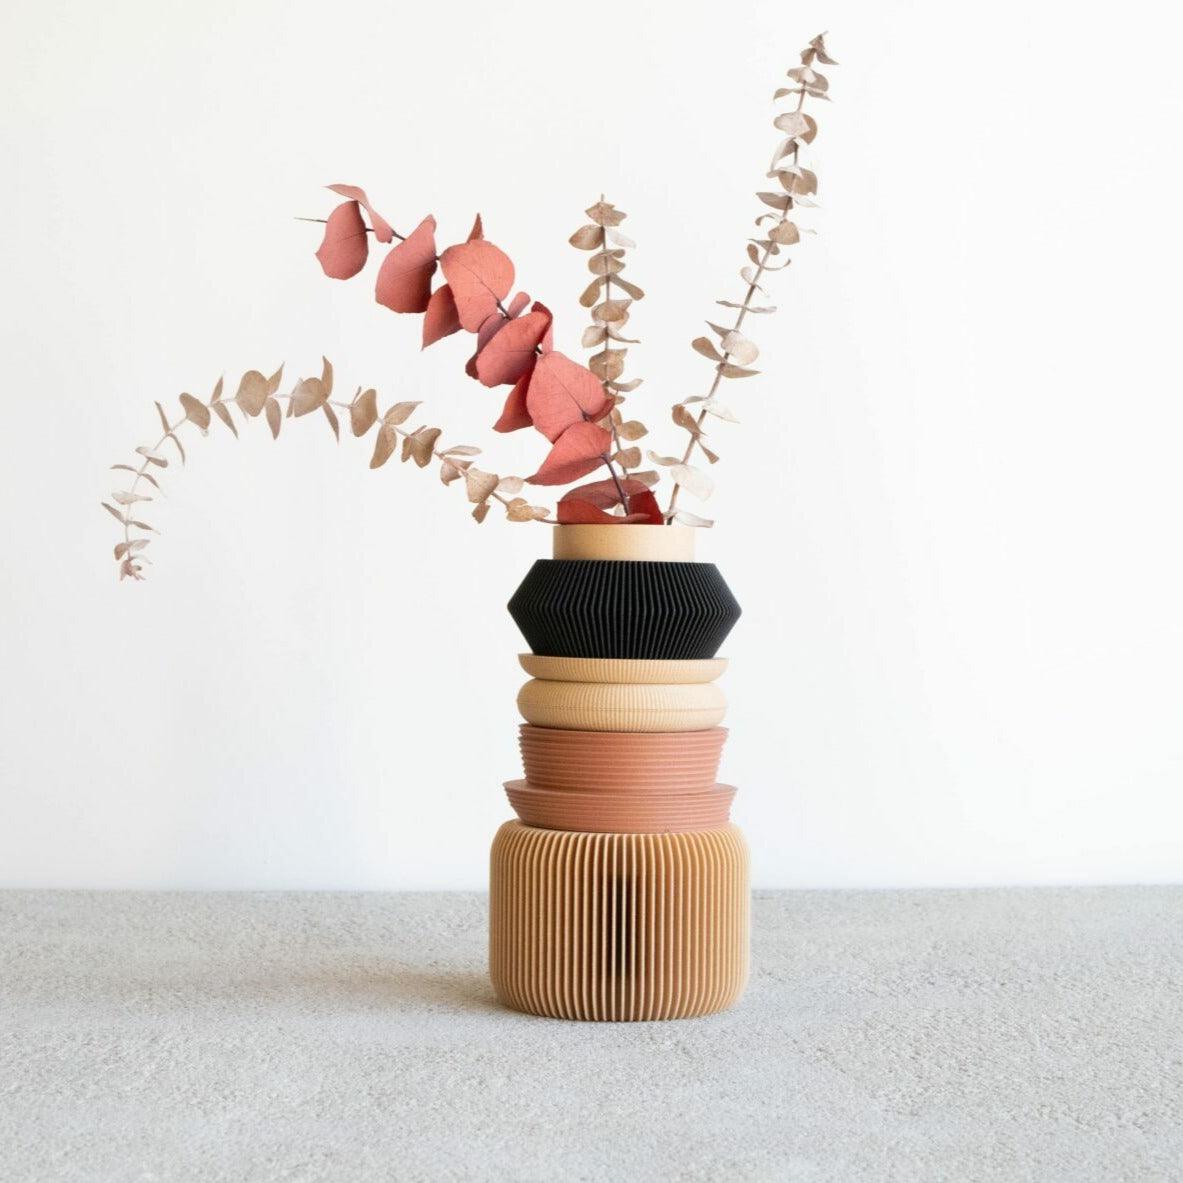 NU 05 Modular Vase - Minimum Design 